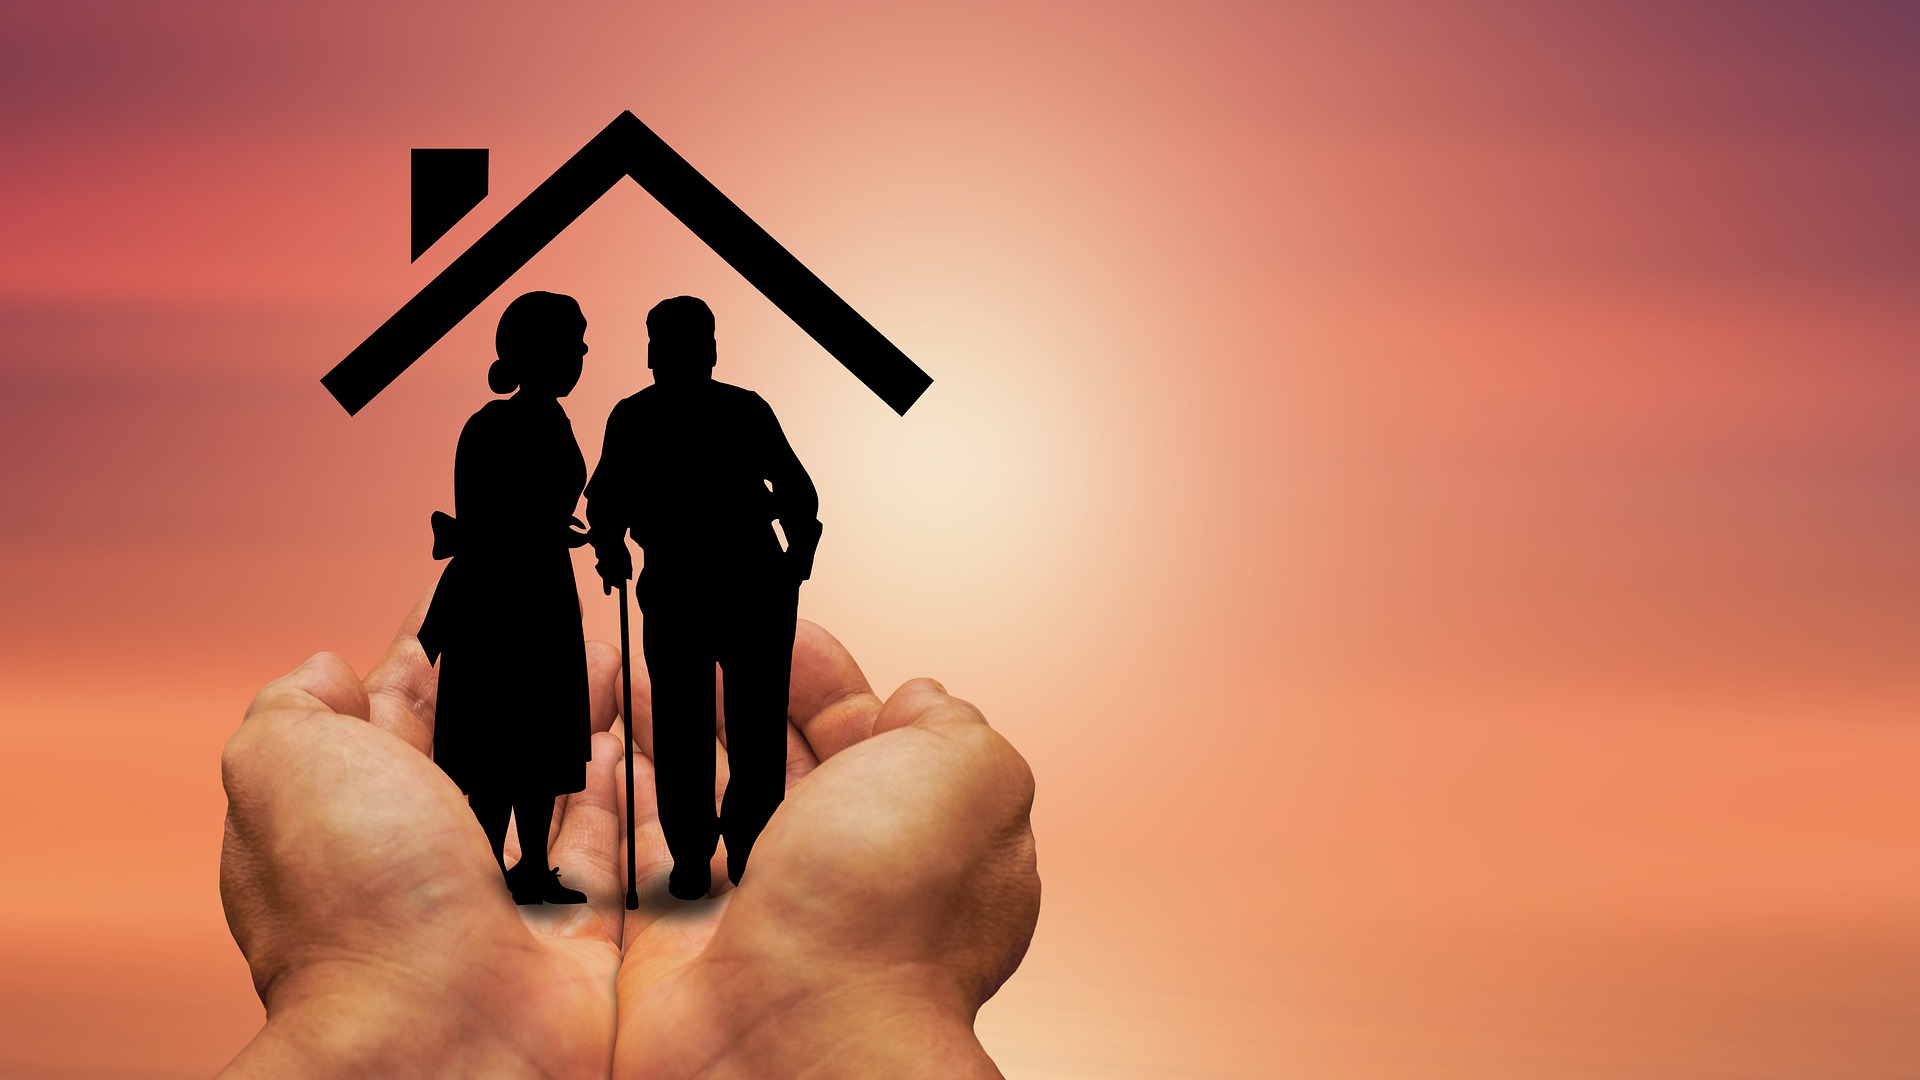 investir en residence senior-Mains loger couple personnes âgées